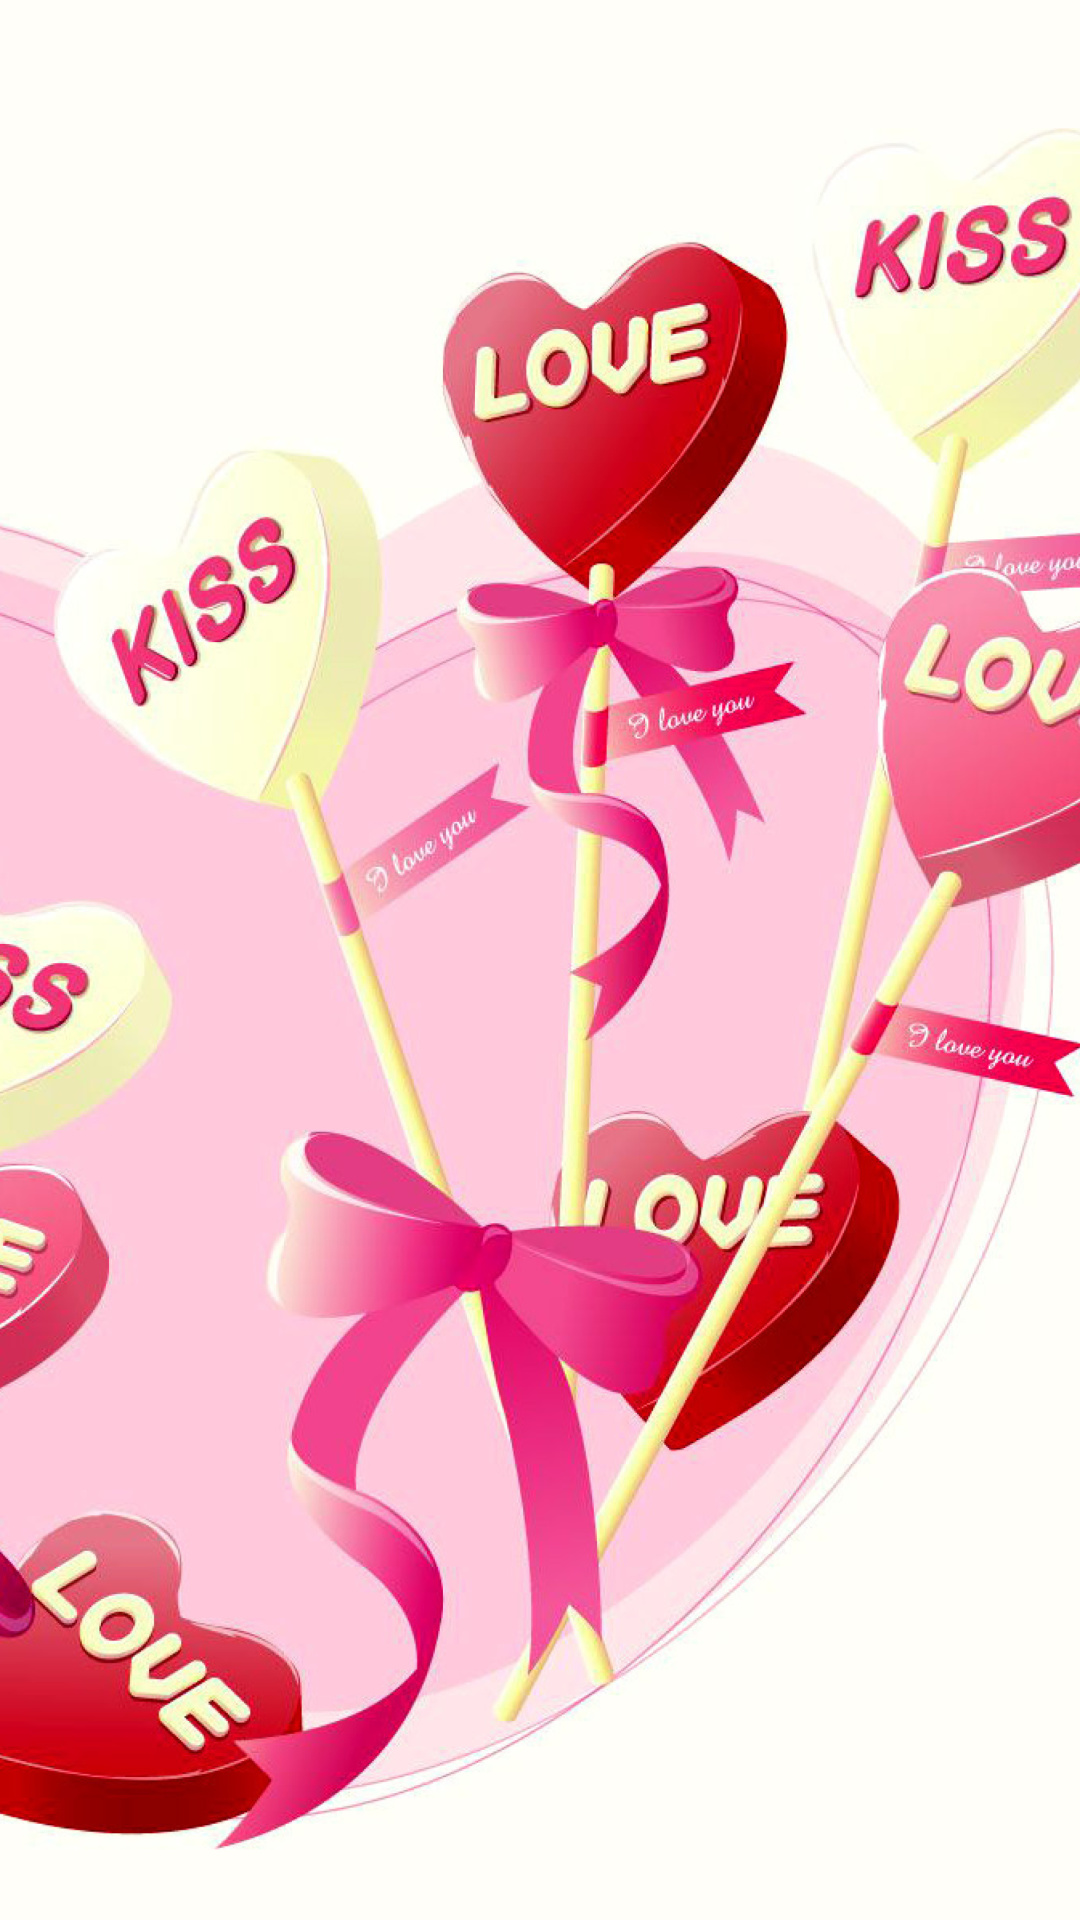 Sfondi I Love You Balloons and Hearts 1080x1920